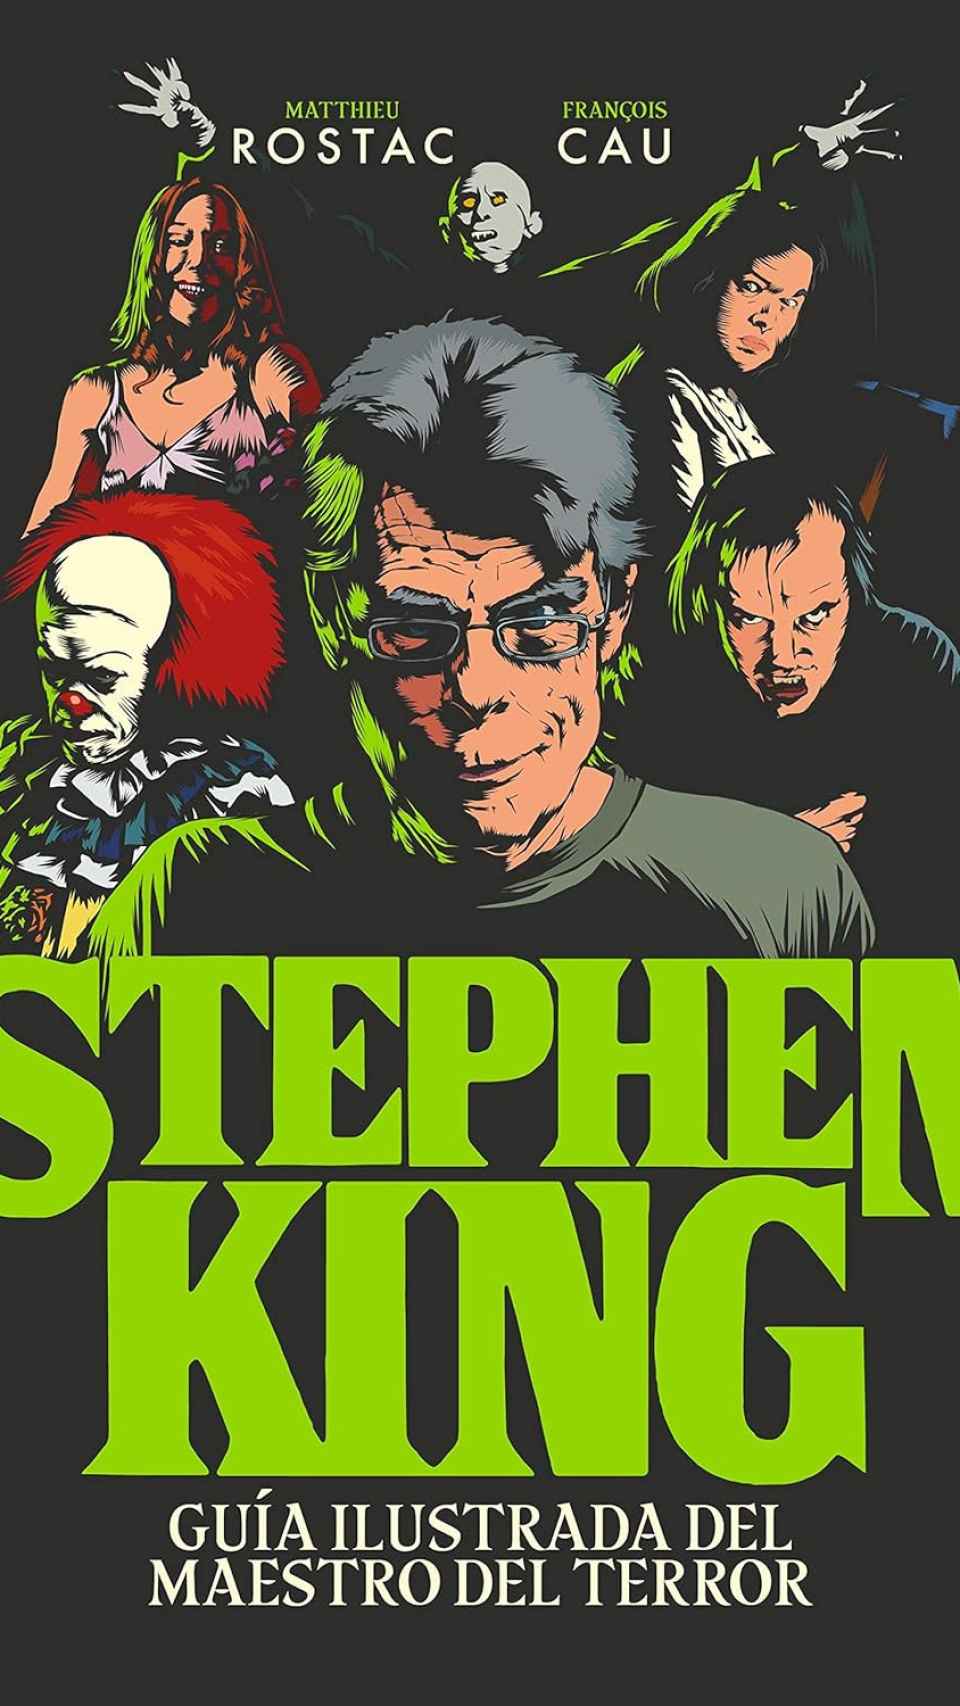 Stephen King, guía ilustrada del maestro del terror, Matthieu Rostac y François Cau.